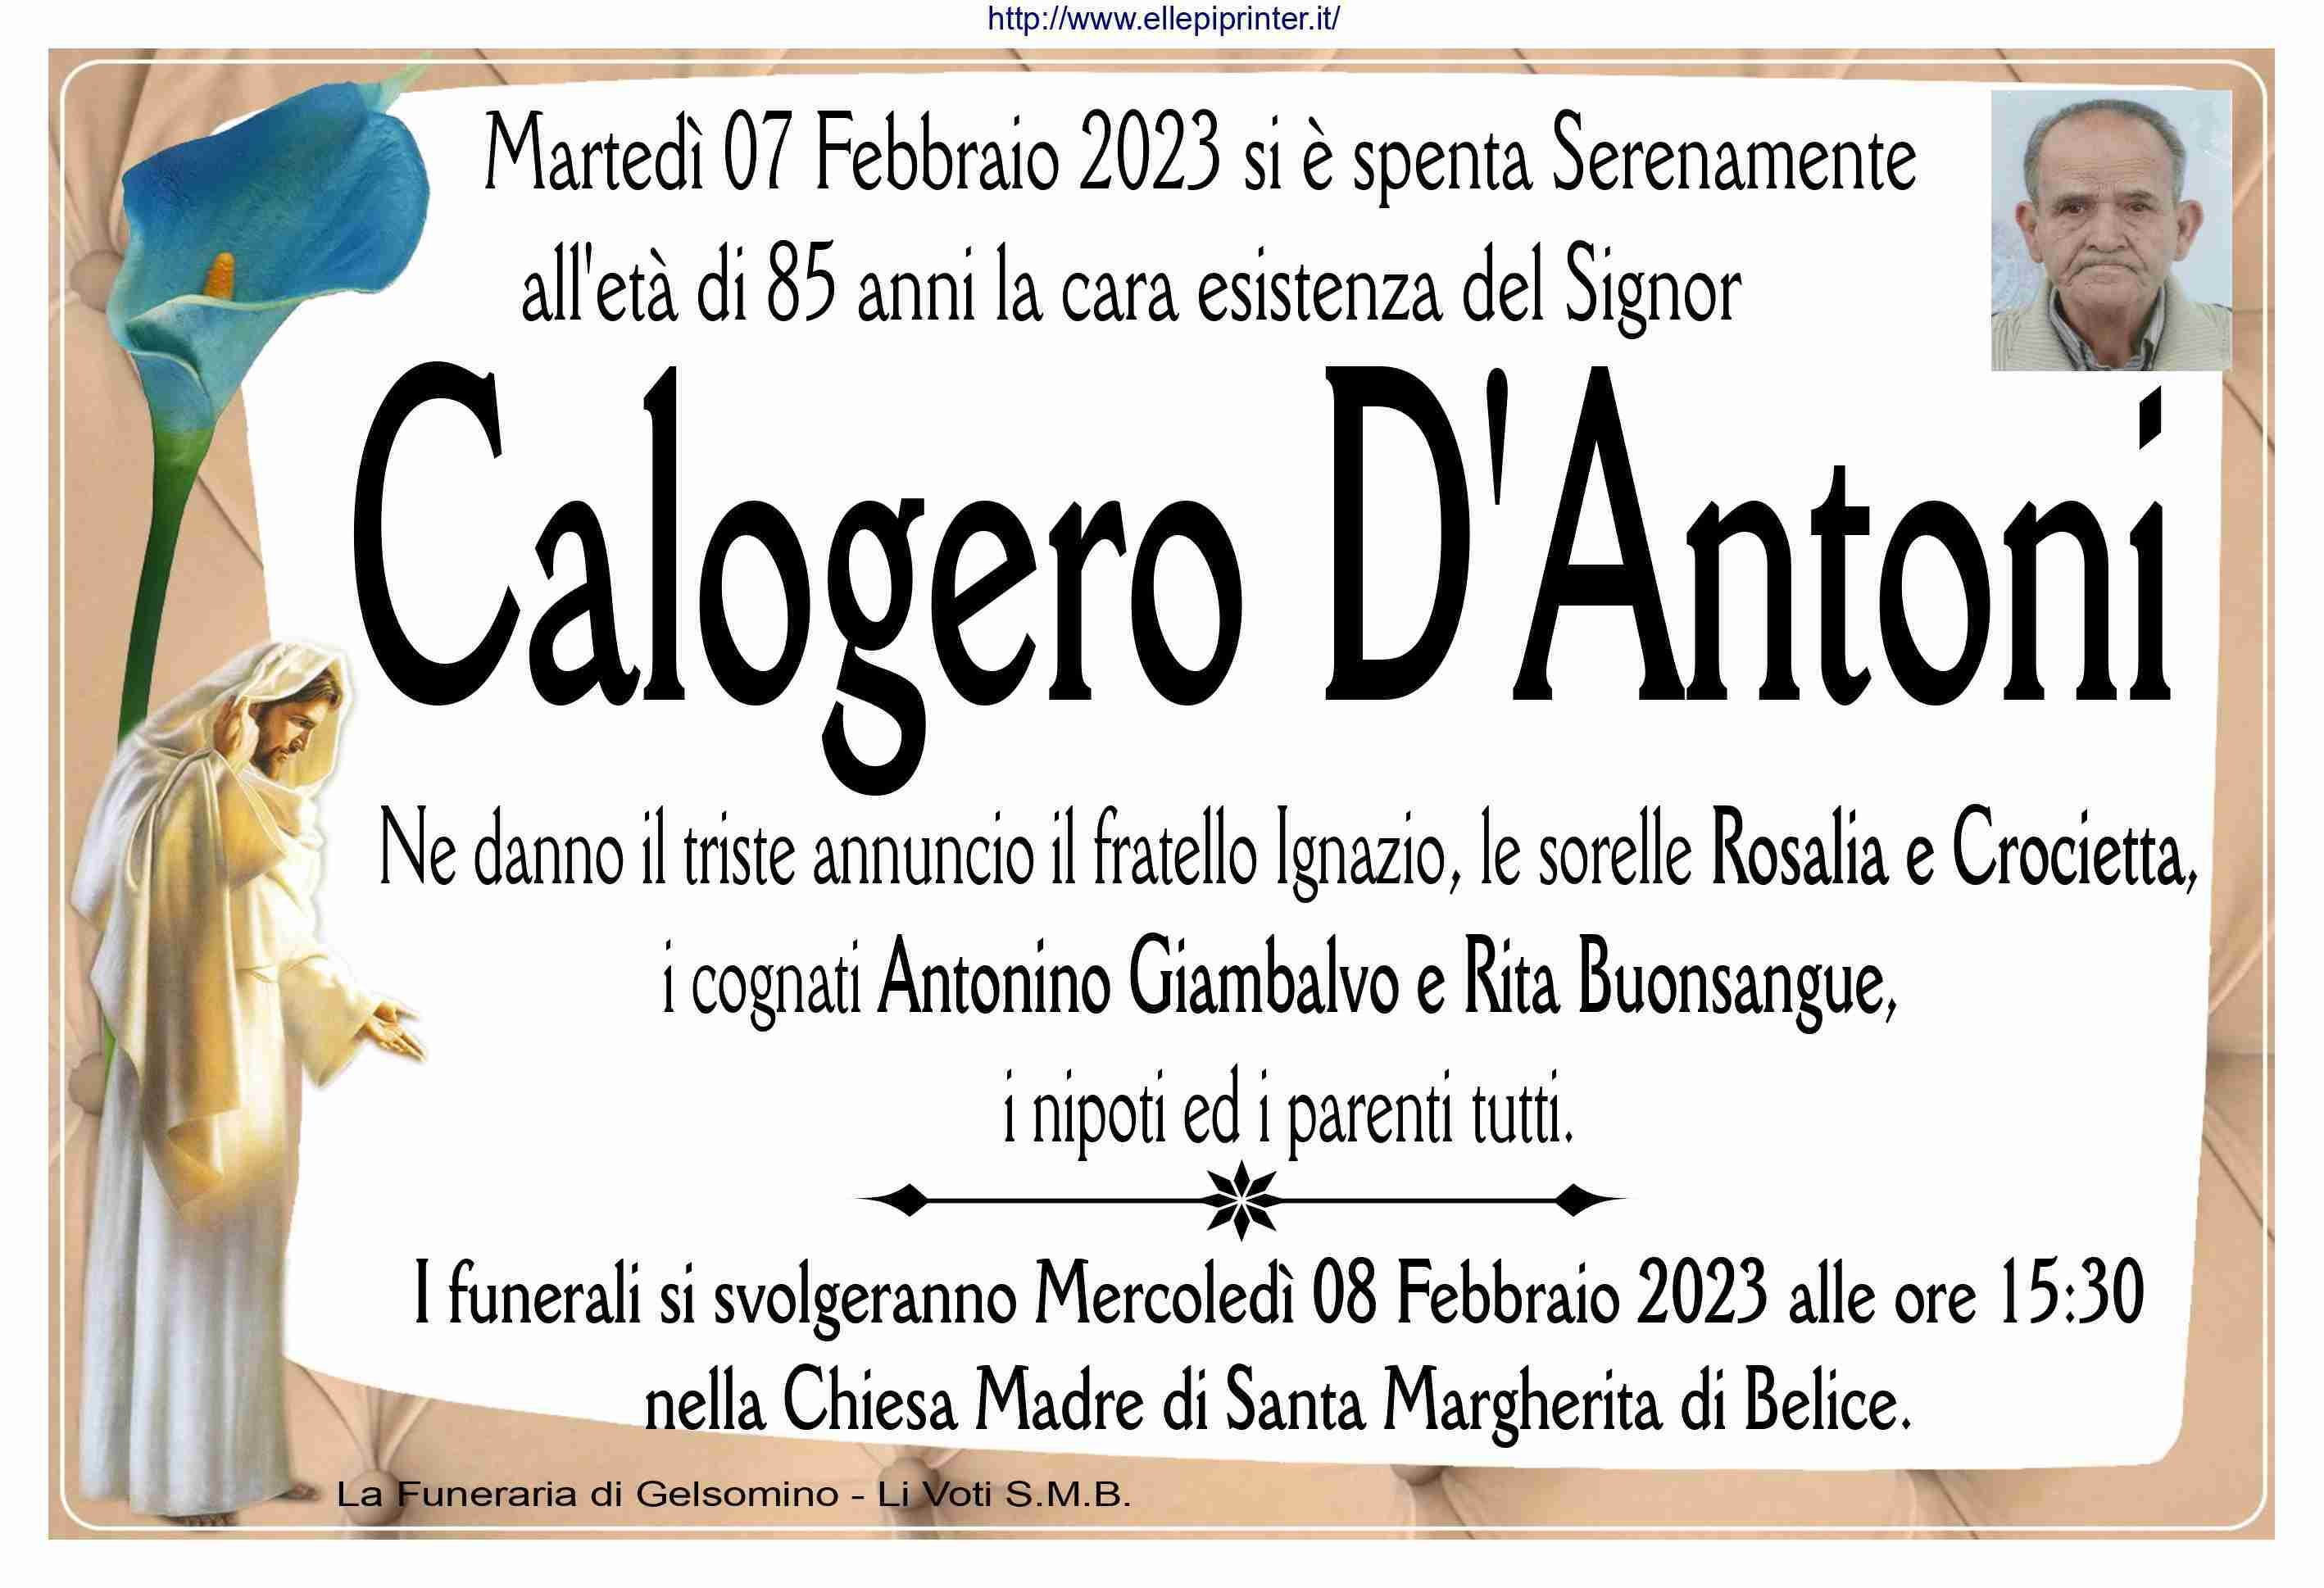 Calogero D'Antoni